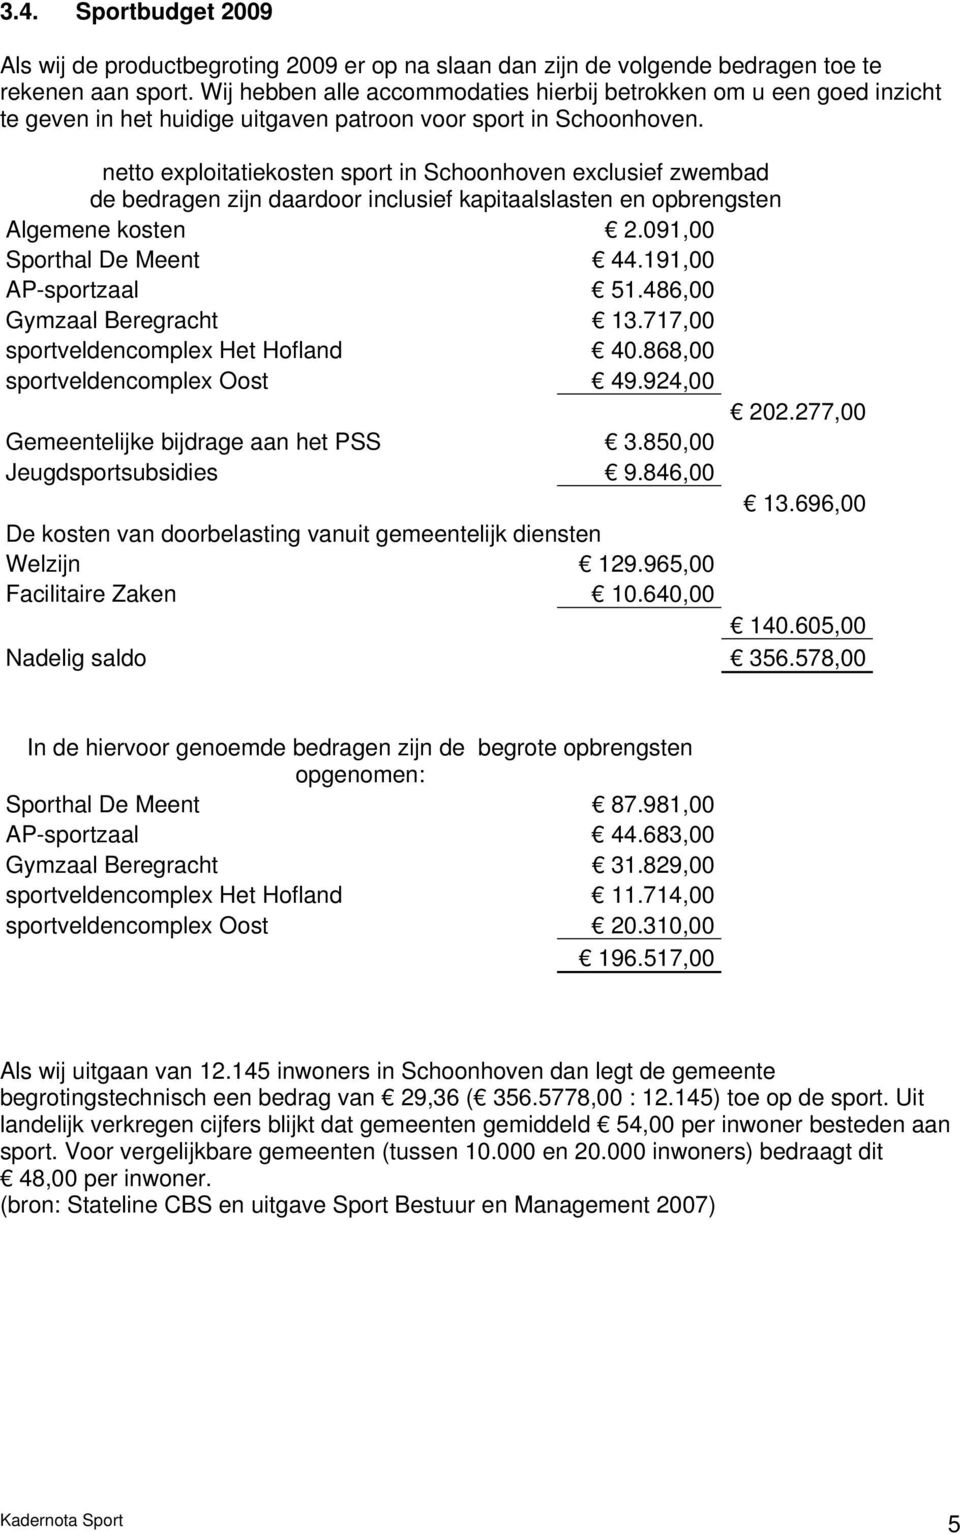 netto exploitatiekosten sport in Schoonhoven exclusief zwembad de bedragen zijn daardoor inclusief kapitaalslasten en opbrengsten Algemene kosten 2.091,00 Sporthal De Meent 44.191,00 AP-sportzaal 51.